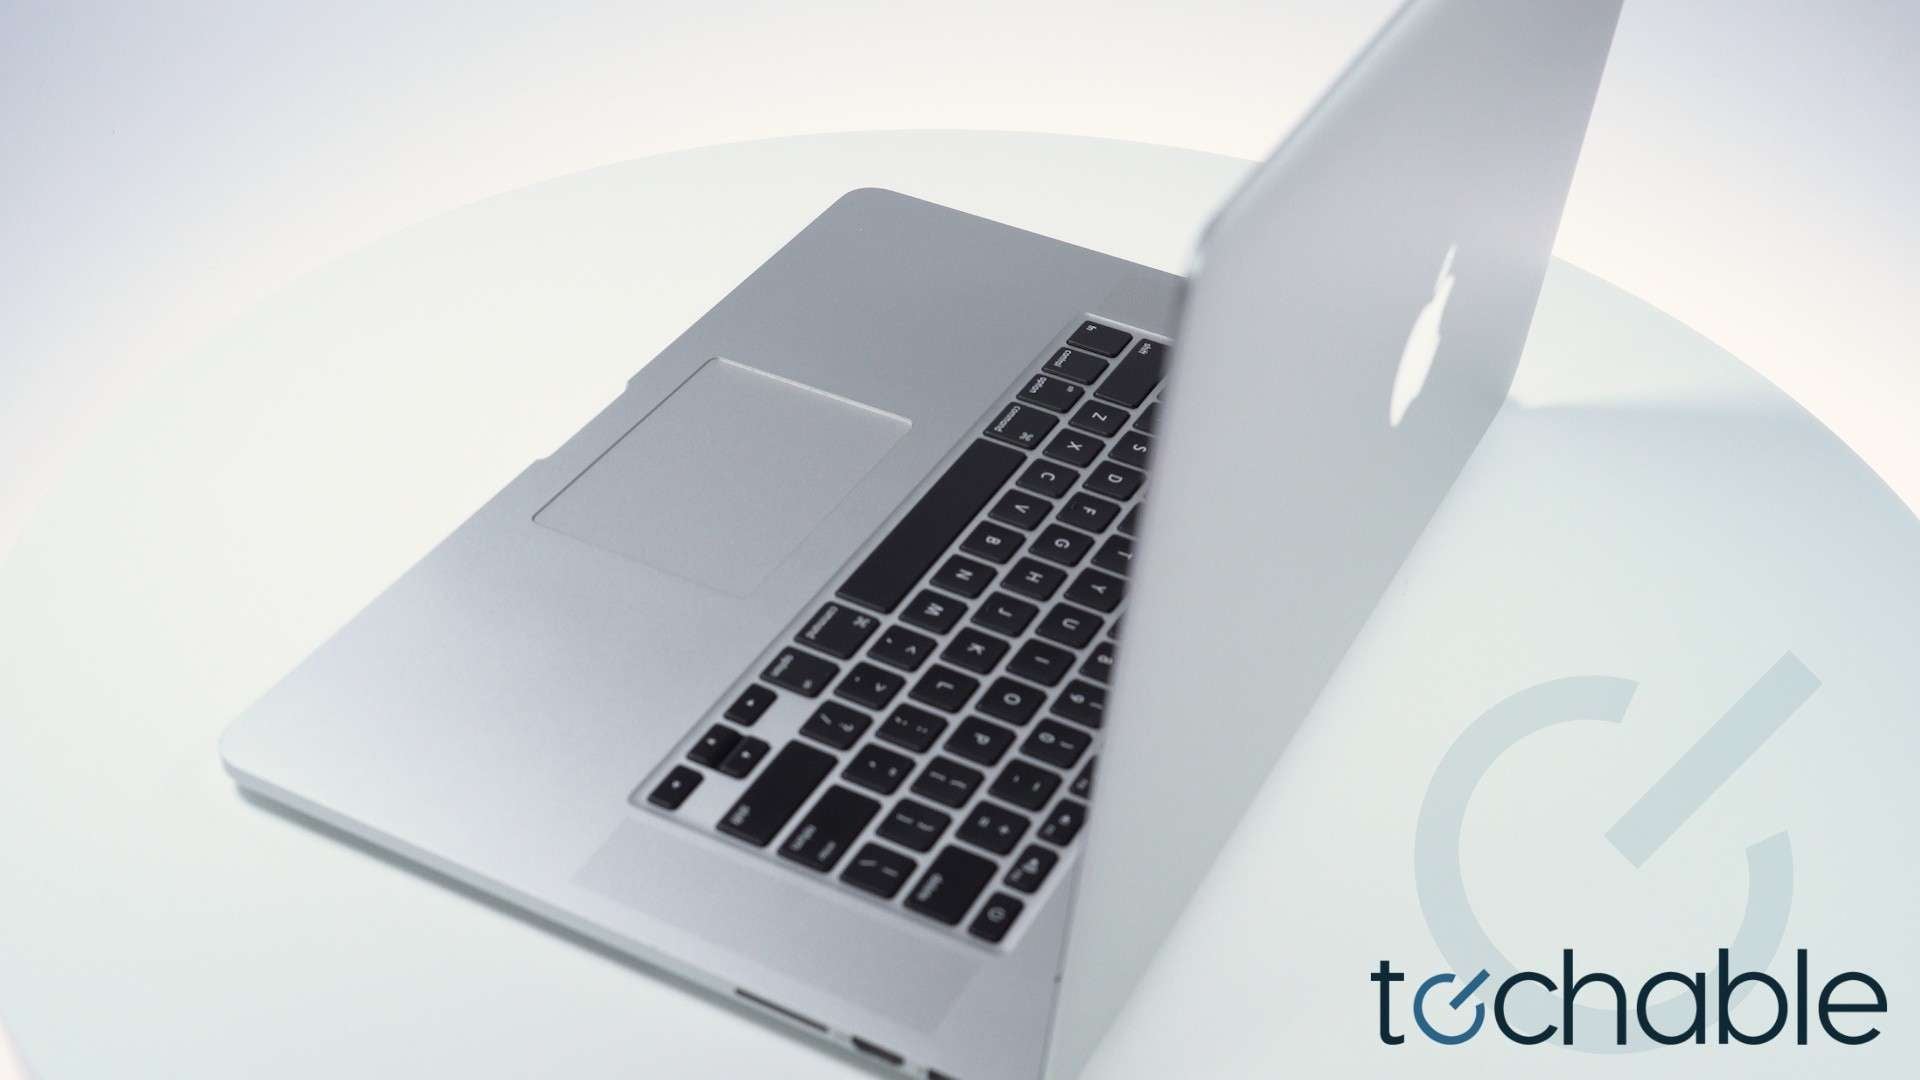 Buy Used & Refurbished Apple MacBook Pro 15.4